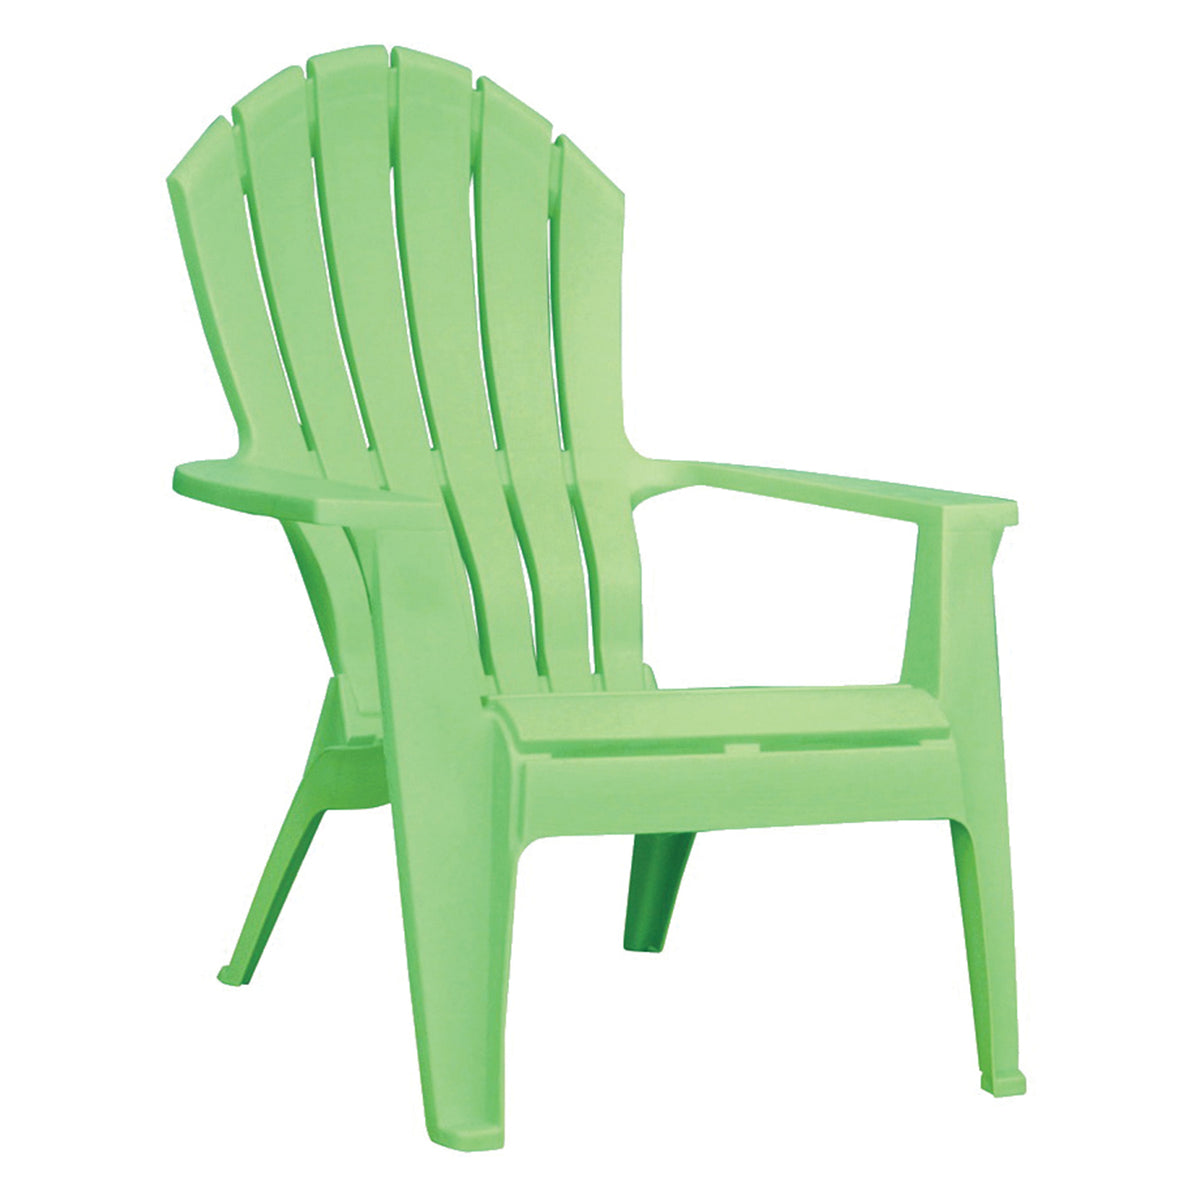 كرسي الشاطئ - أخضر كرسي شاطئ جميل للاستمتاع بالجلوس في وقت النزهة مع الأصدقاء والعائلة.